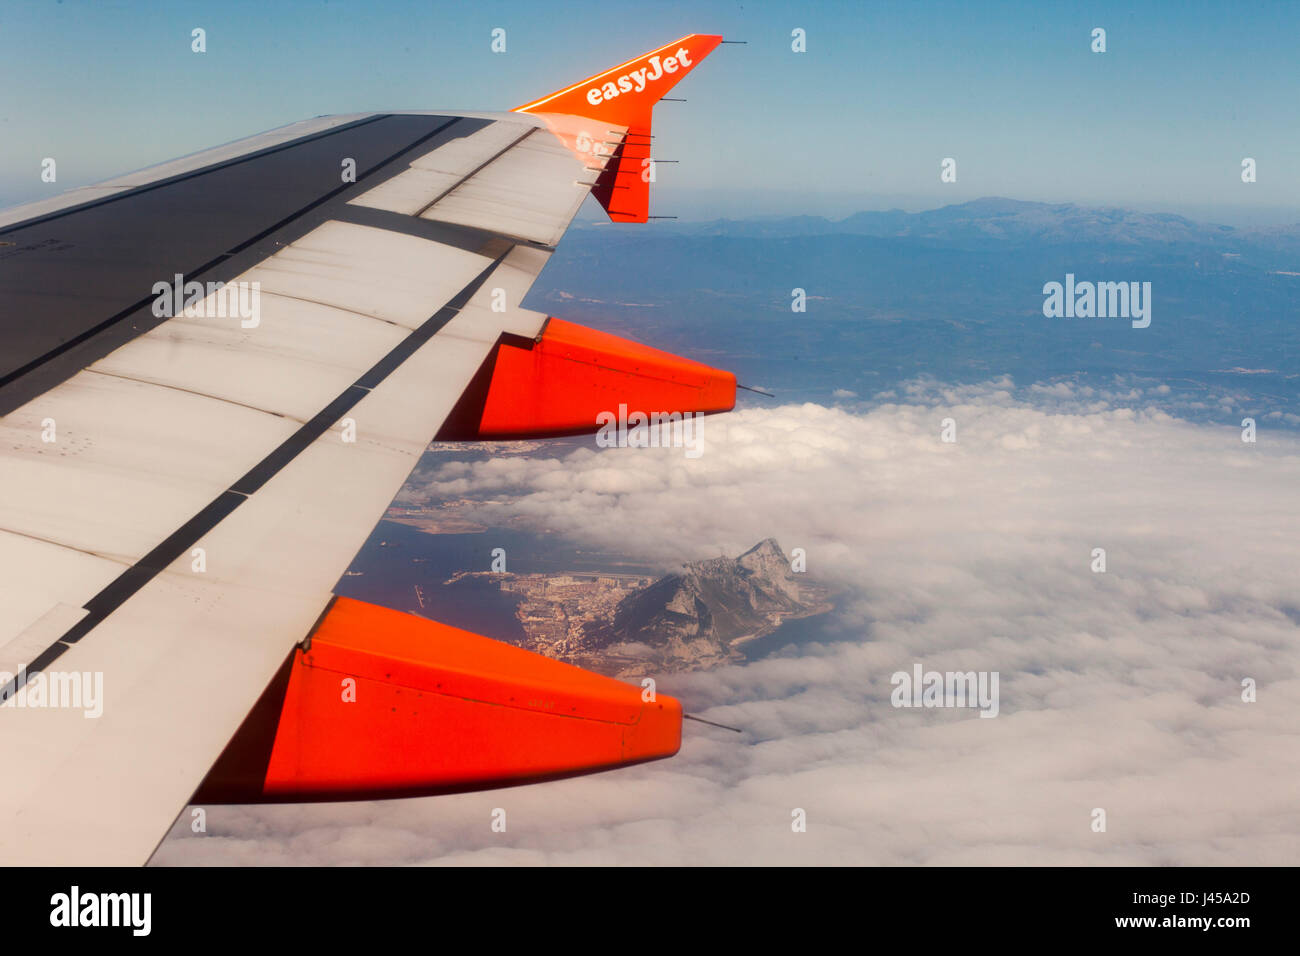 Une vue aérienne du rocher de Gibraltar poussant hors de vol à basse altitude des nuages en vu d'un avion Easy Jet siège fenêtre sur sa façon de Tanger. Banque D'Images